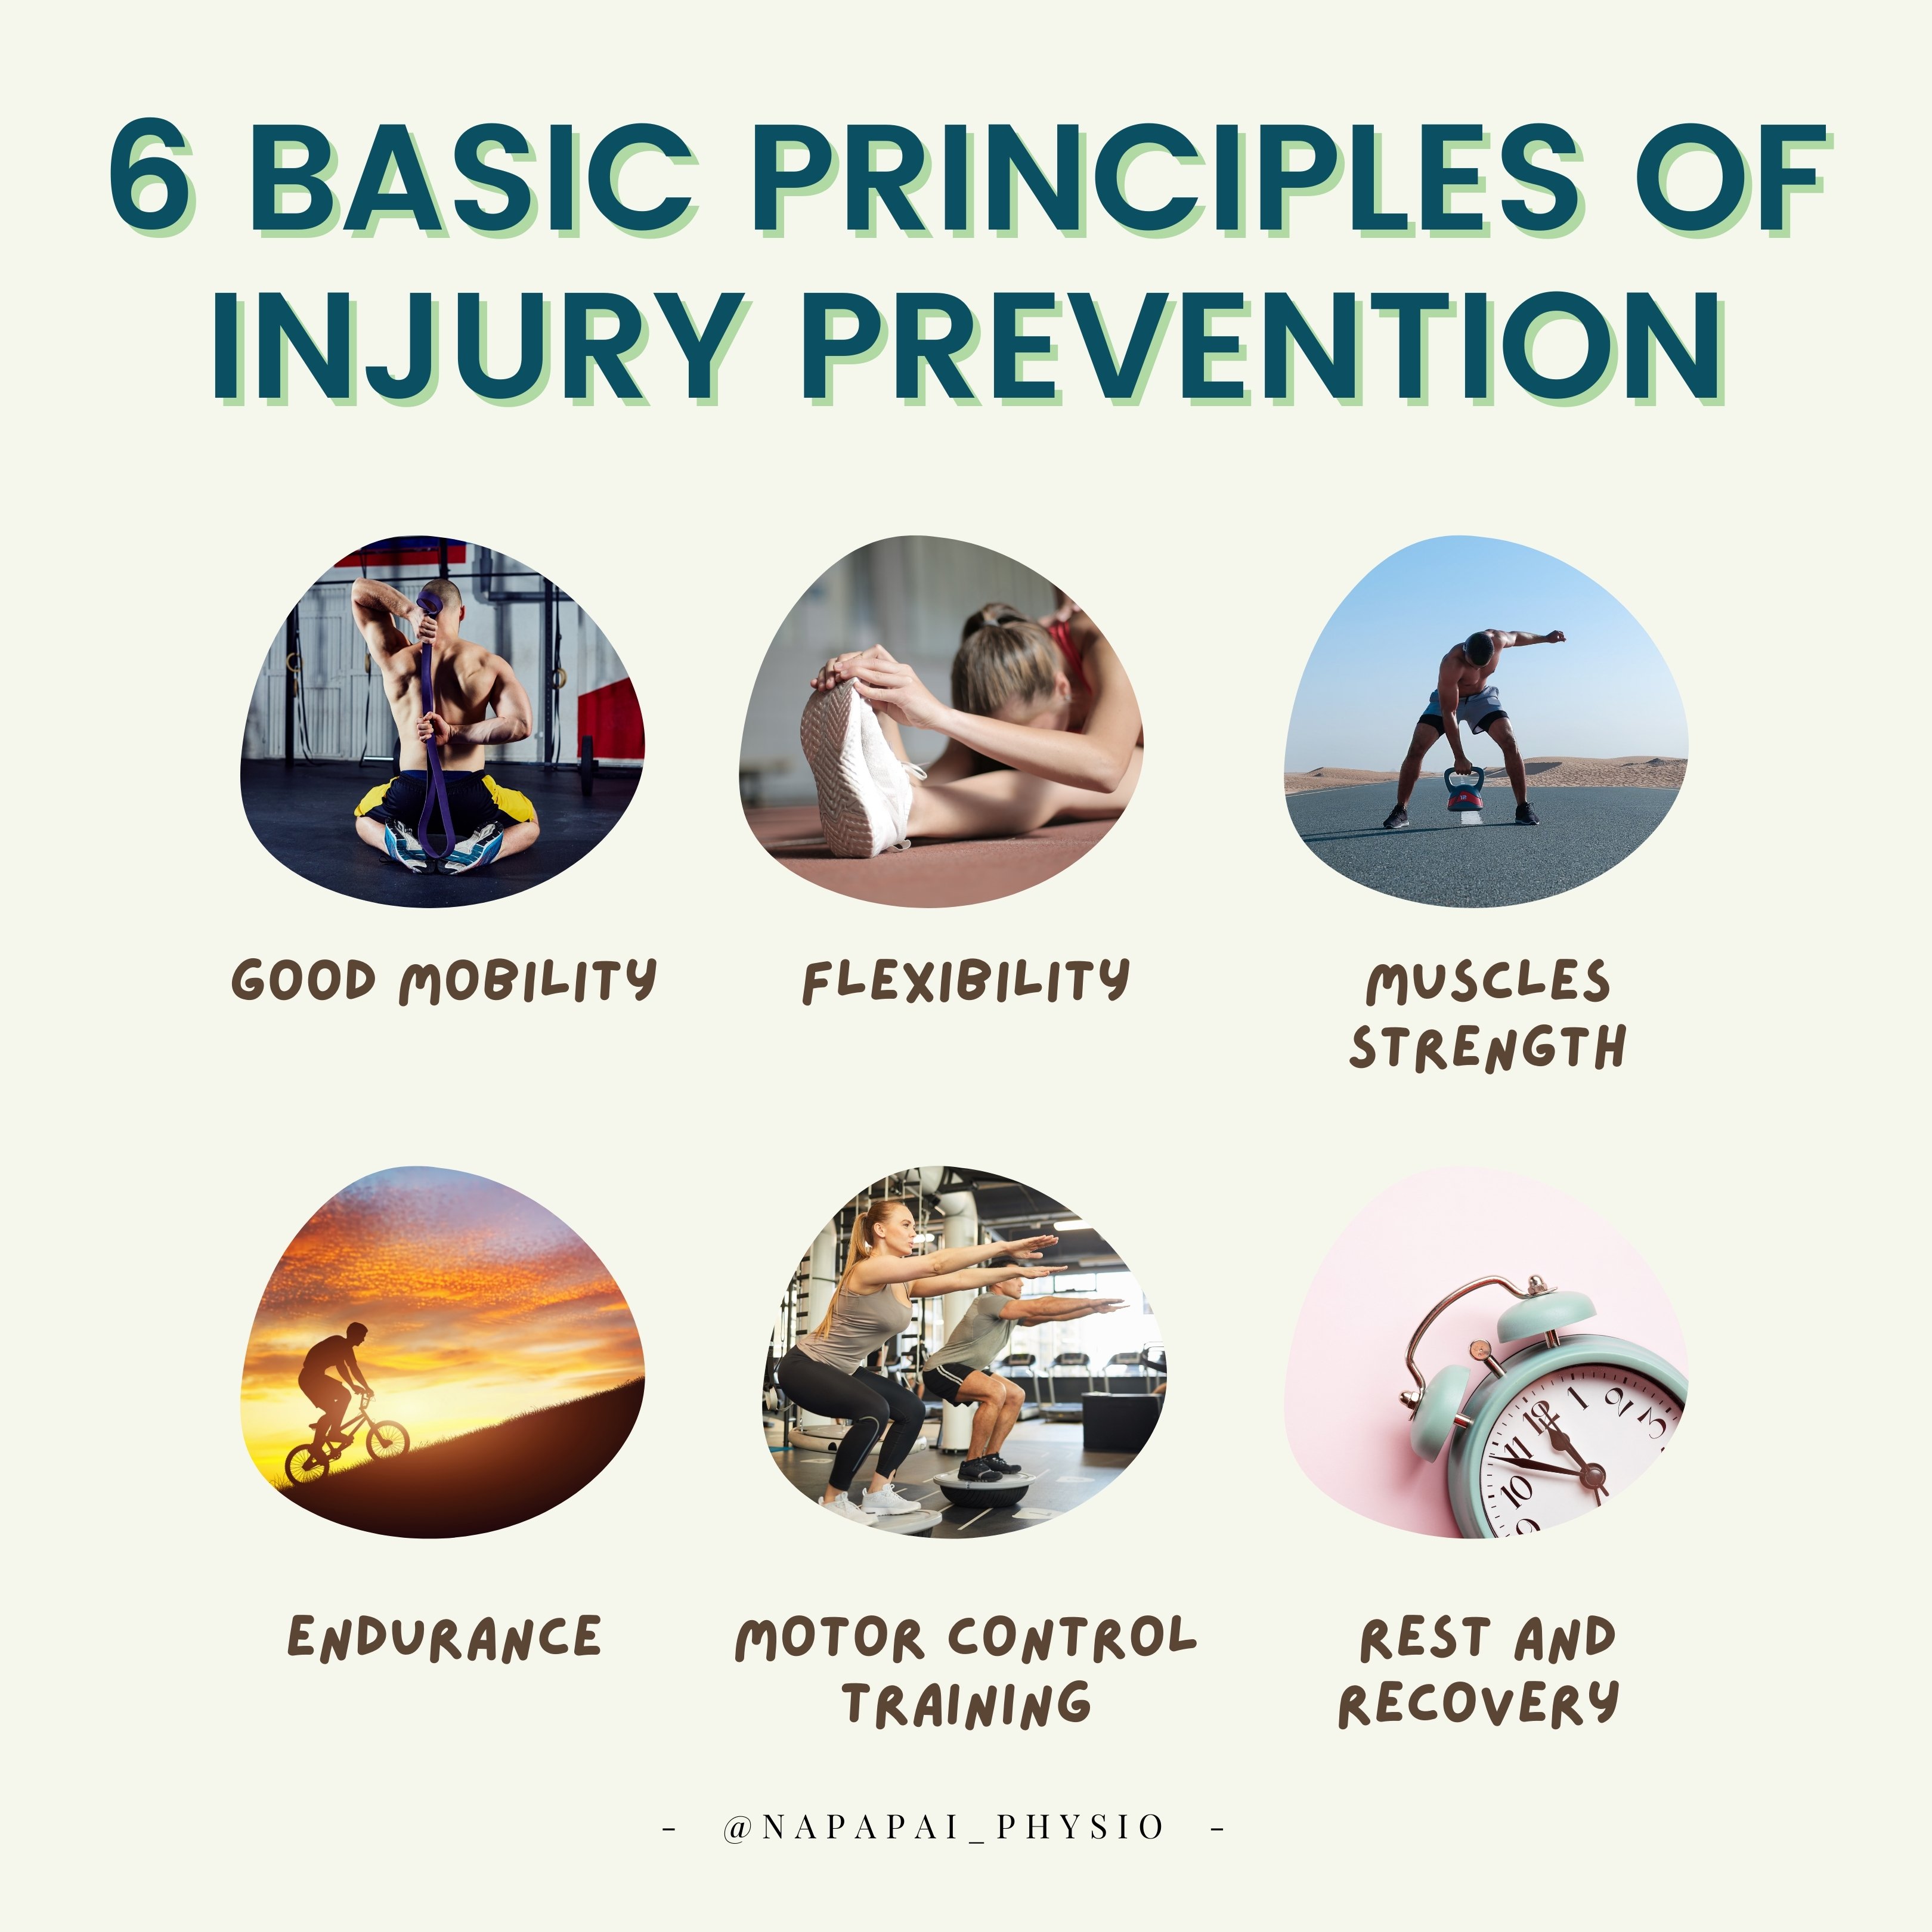 Injury prevention through proper supplementation